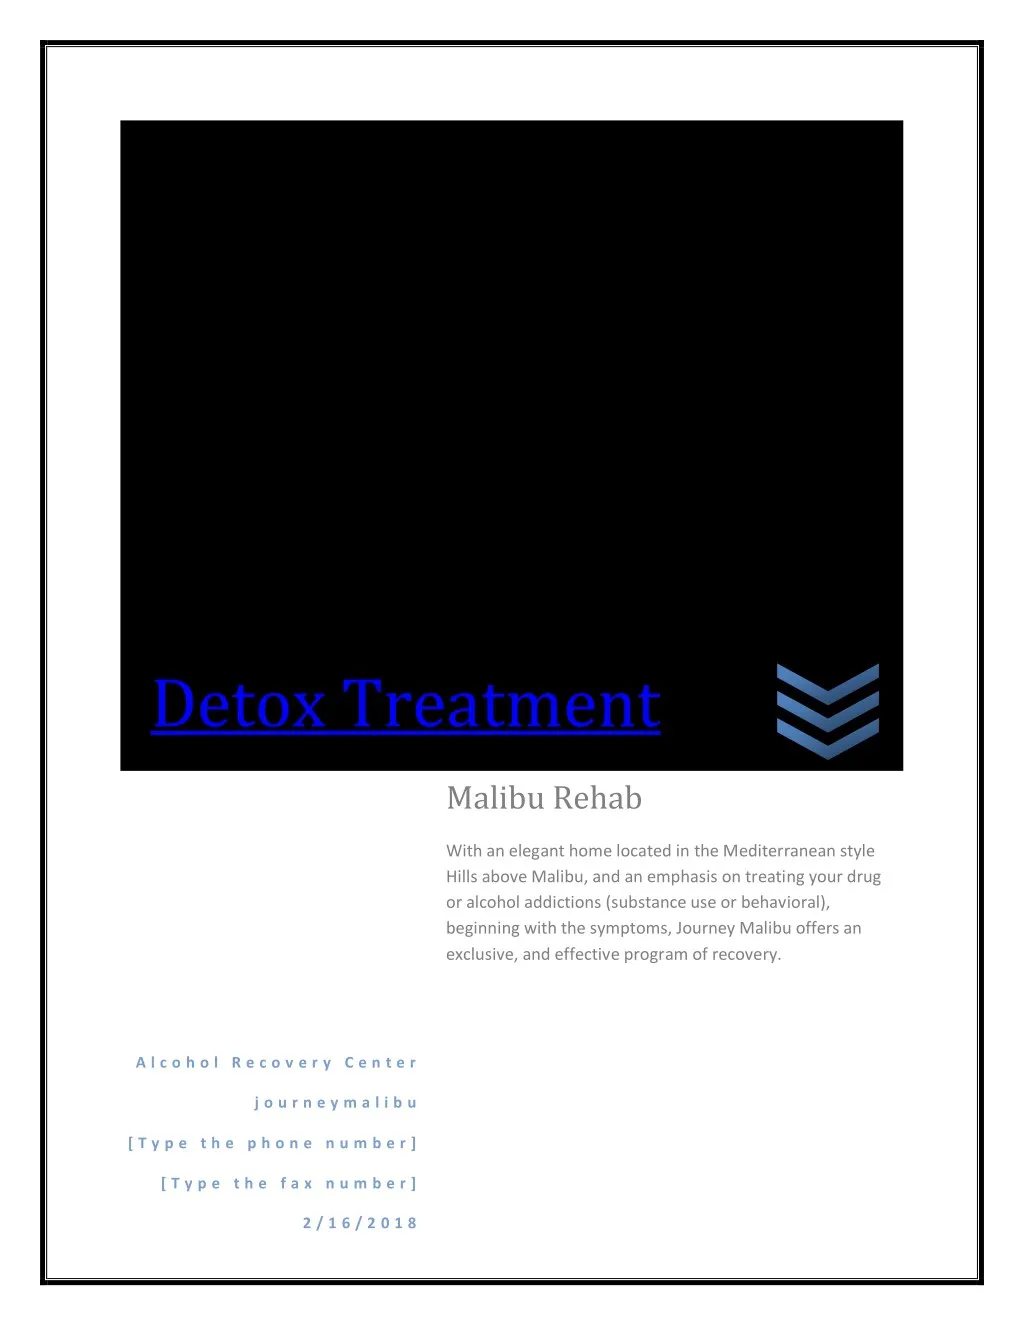 detox treatment